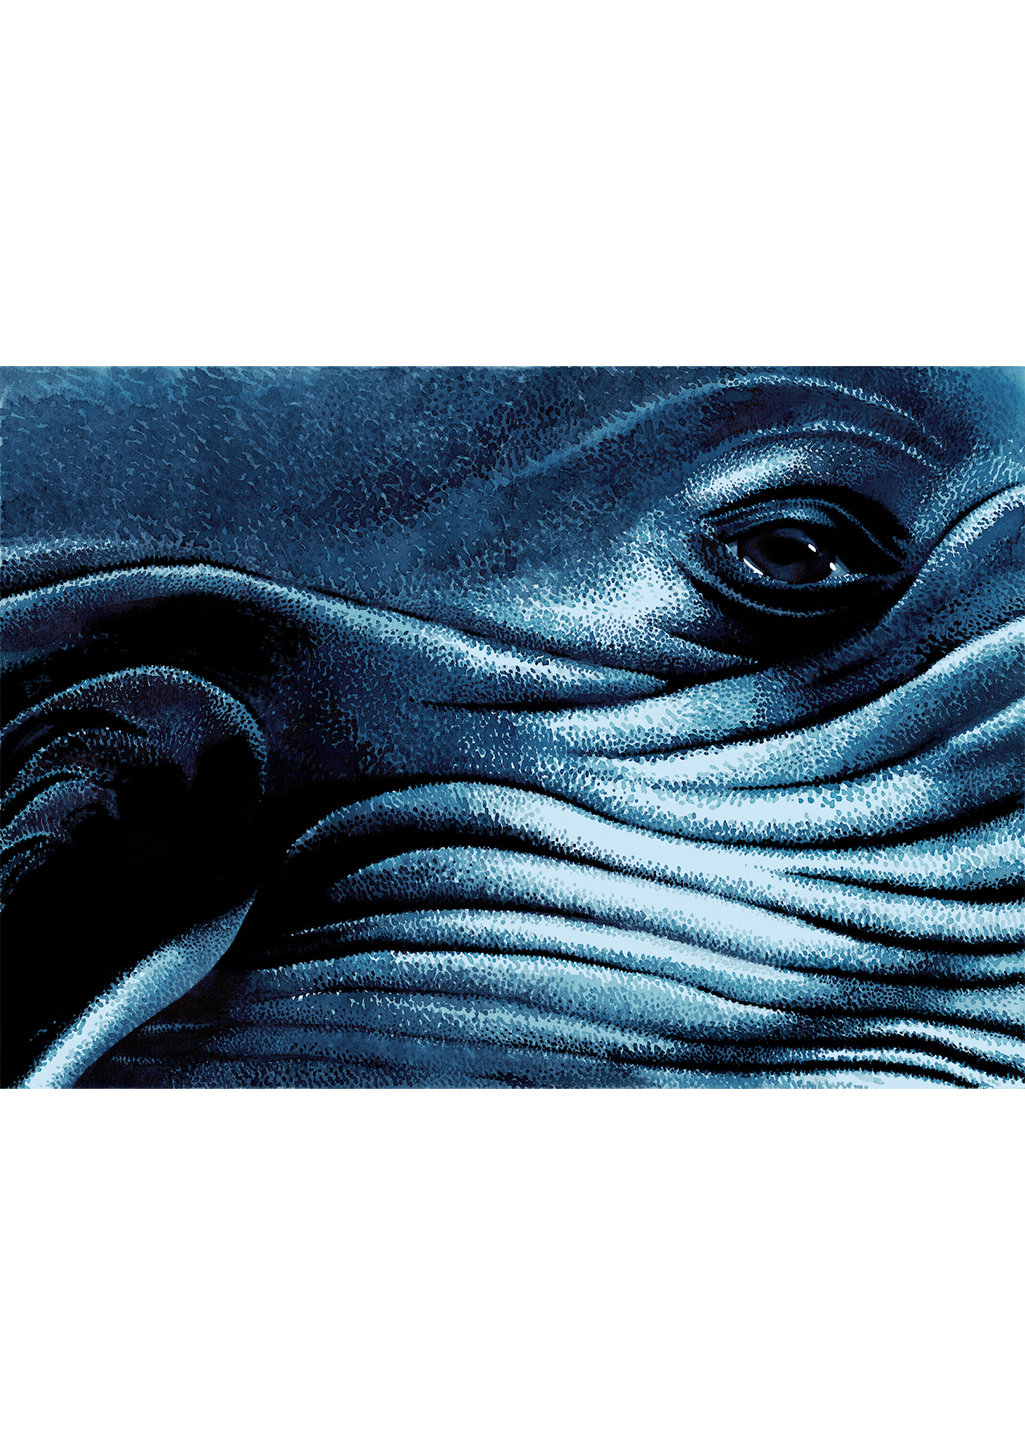 affiche-animaux-amandine-delaunay-baleine-bleue-1